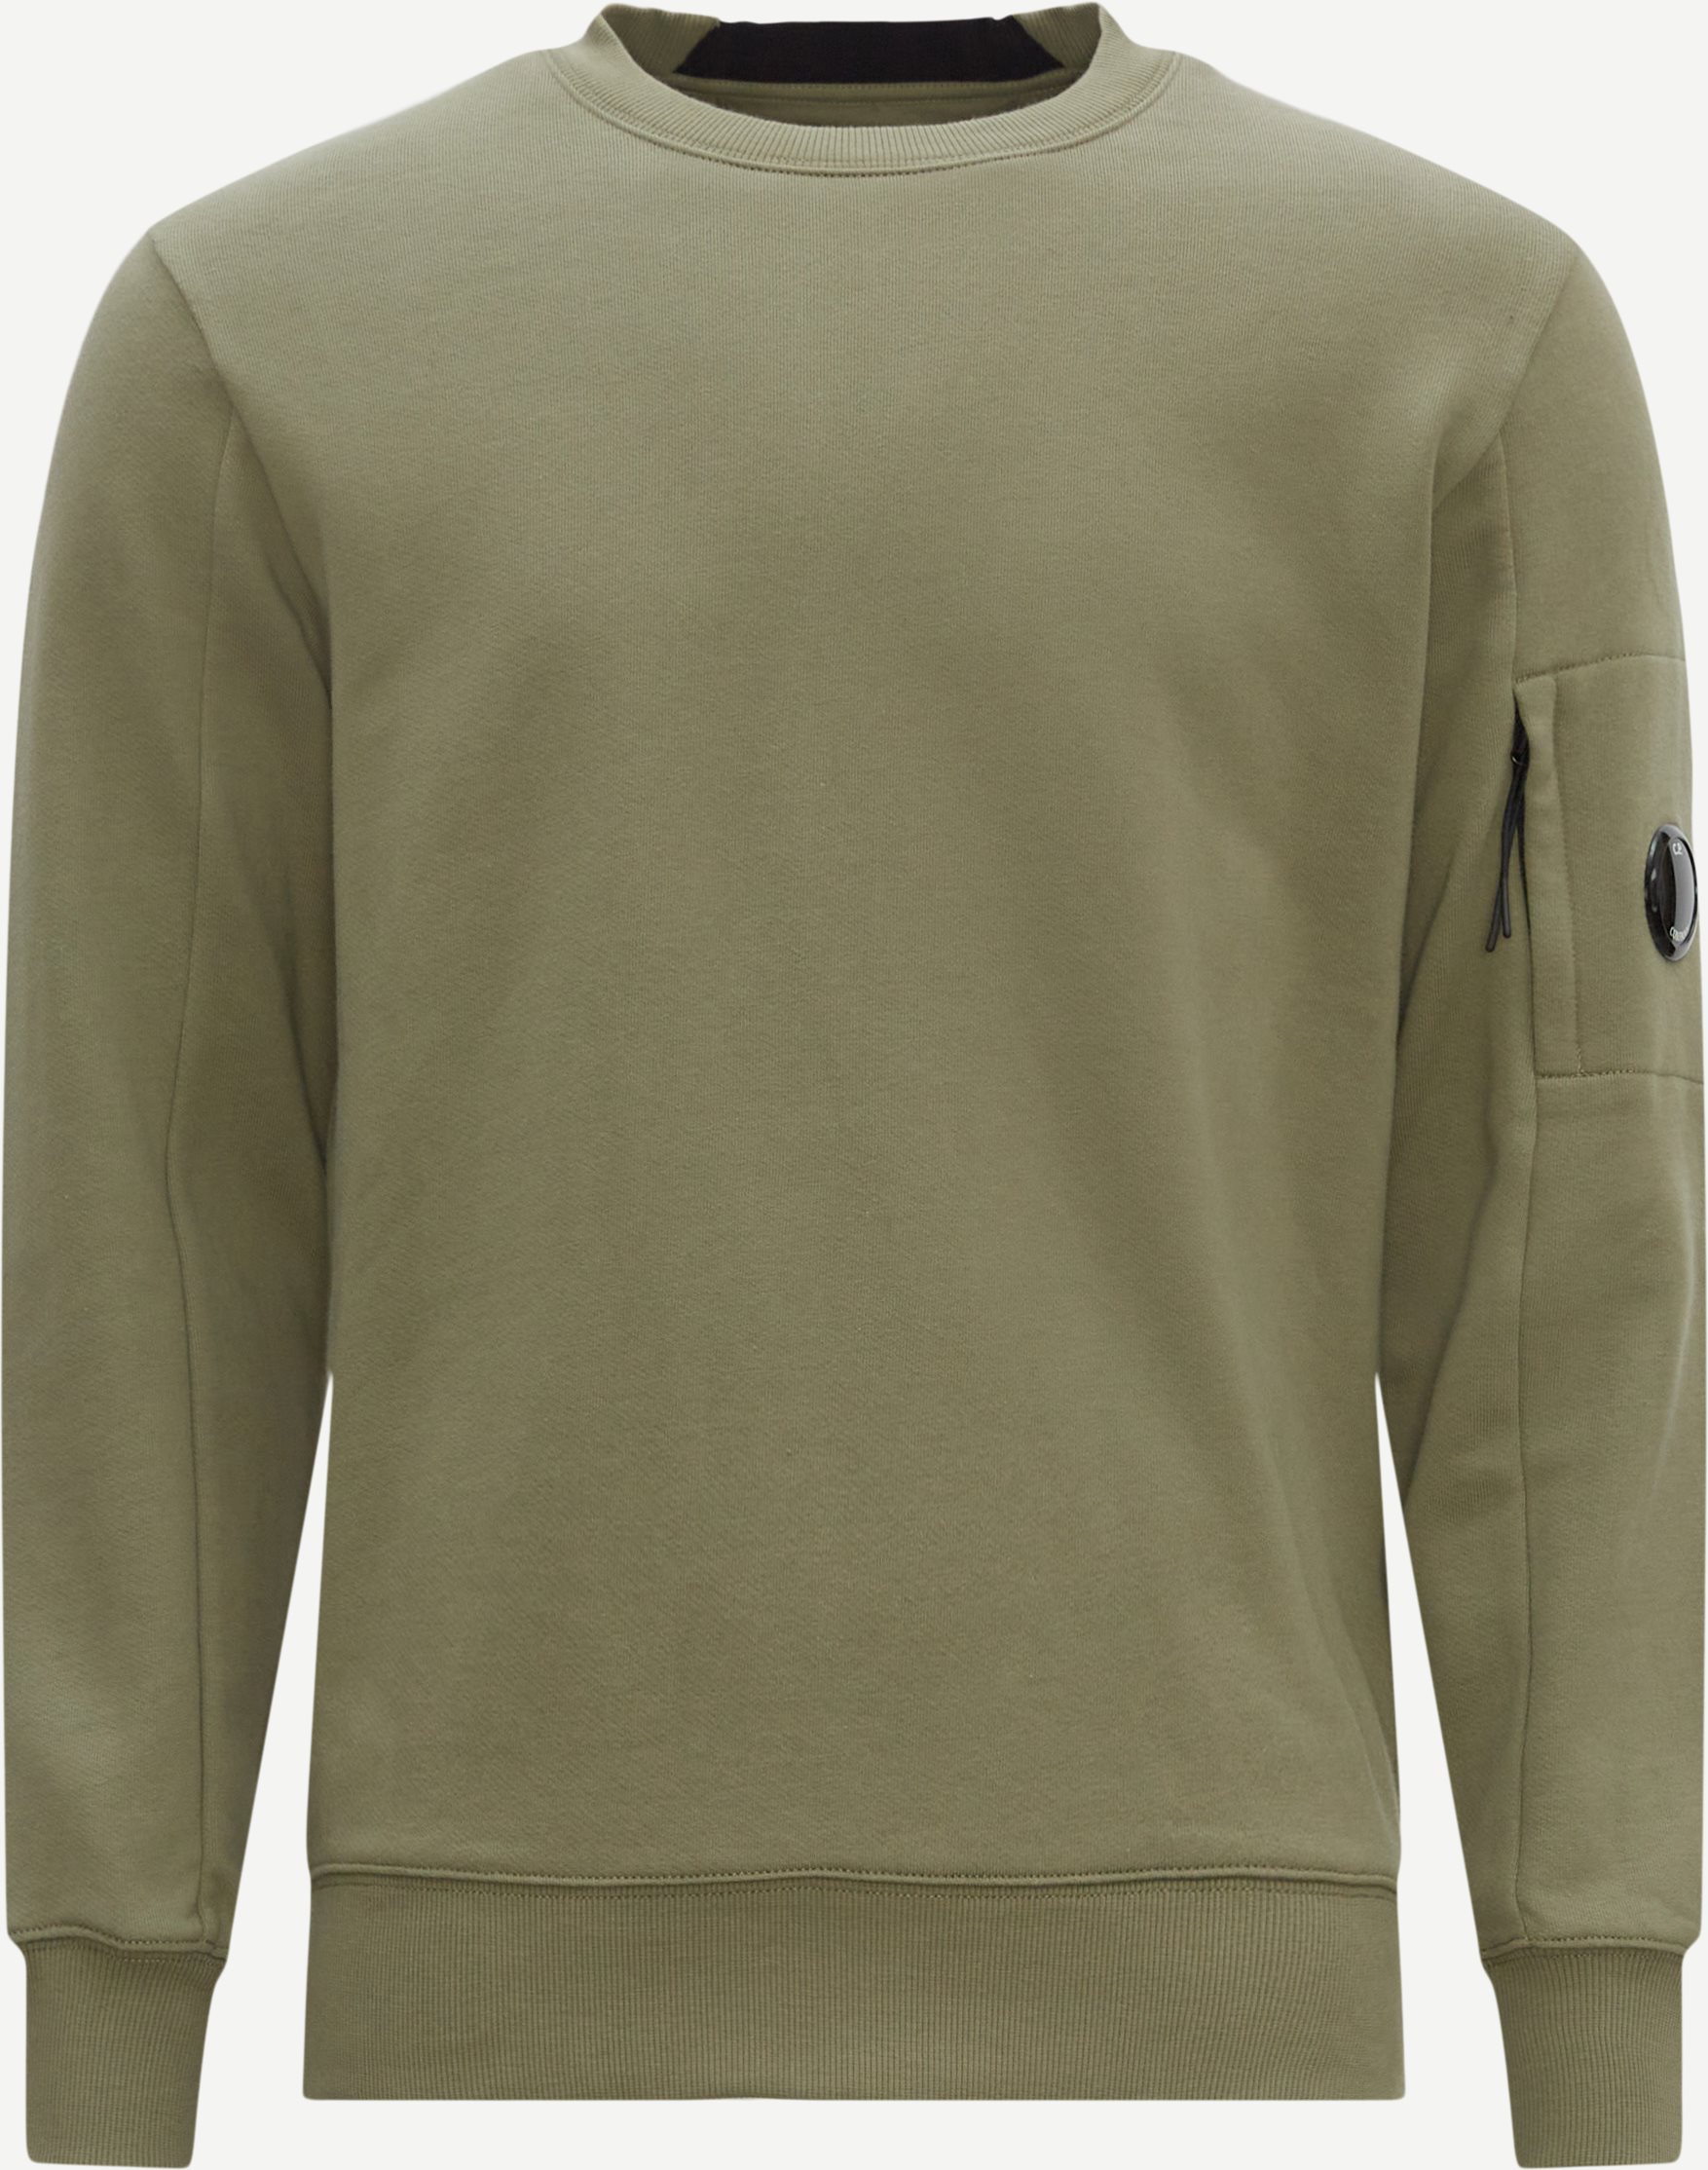 C.P. Company Sweatshirts SS022A 5086W SS23 Army